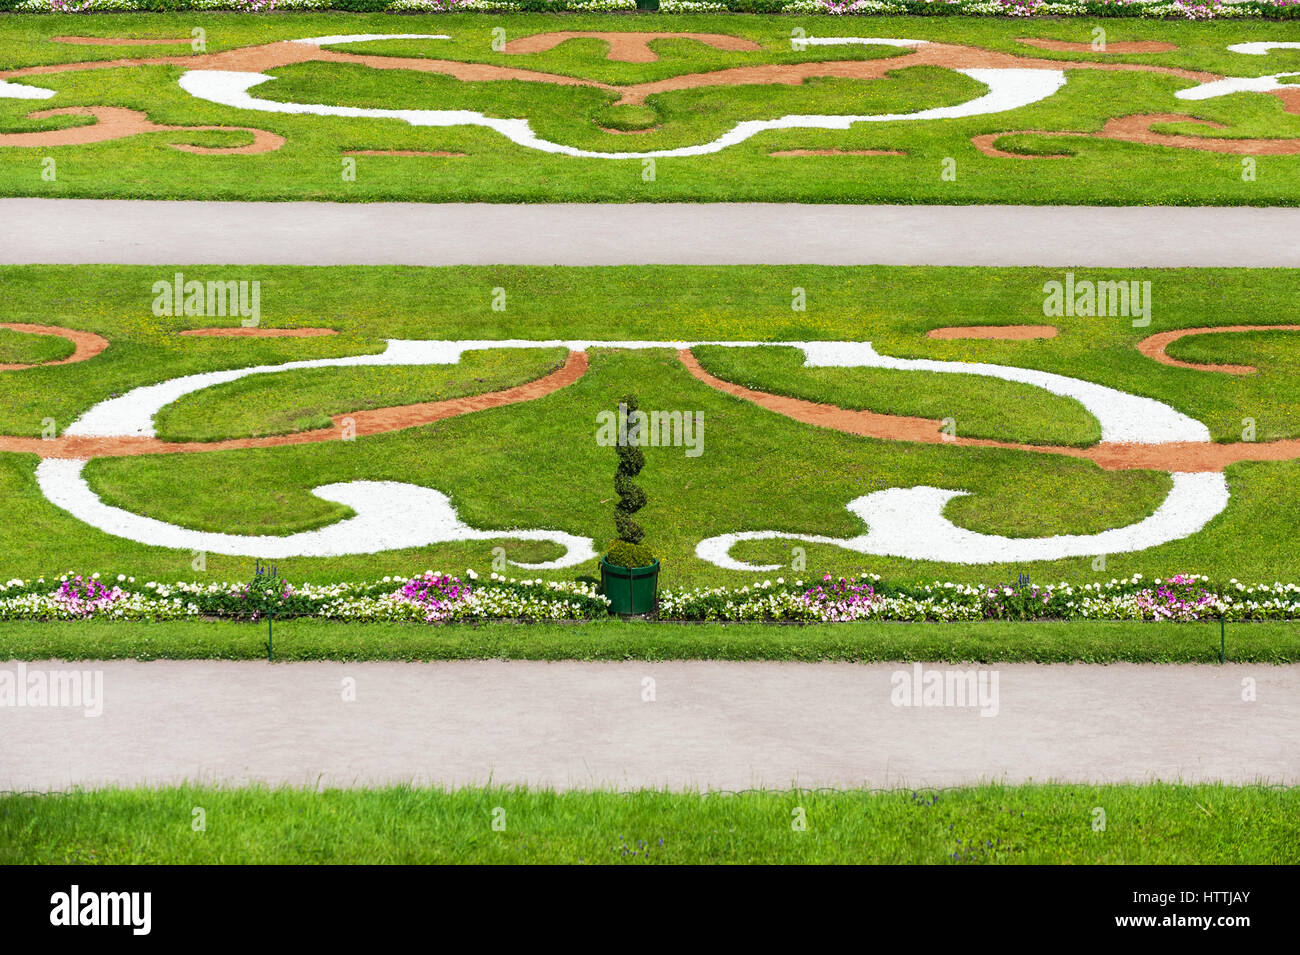 Plantes ornementales jardins bas du Grand Palais de Peterhof, près de Saint-Pétersbourg, Russie Banque D'Images